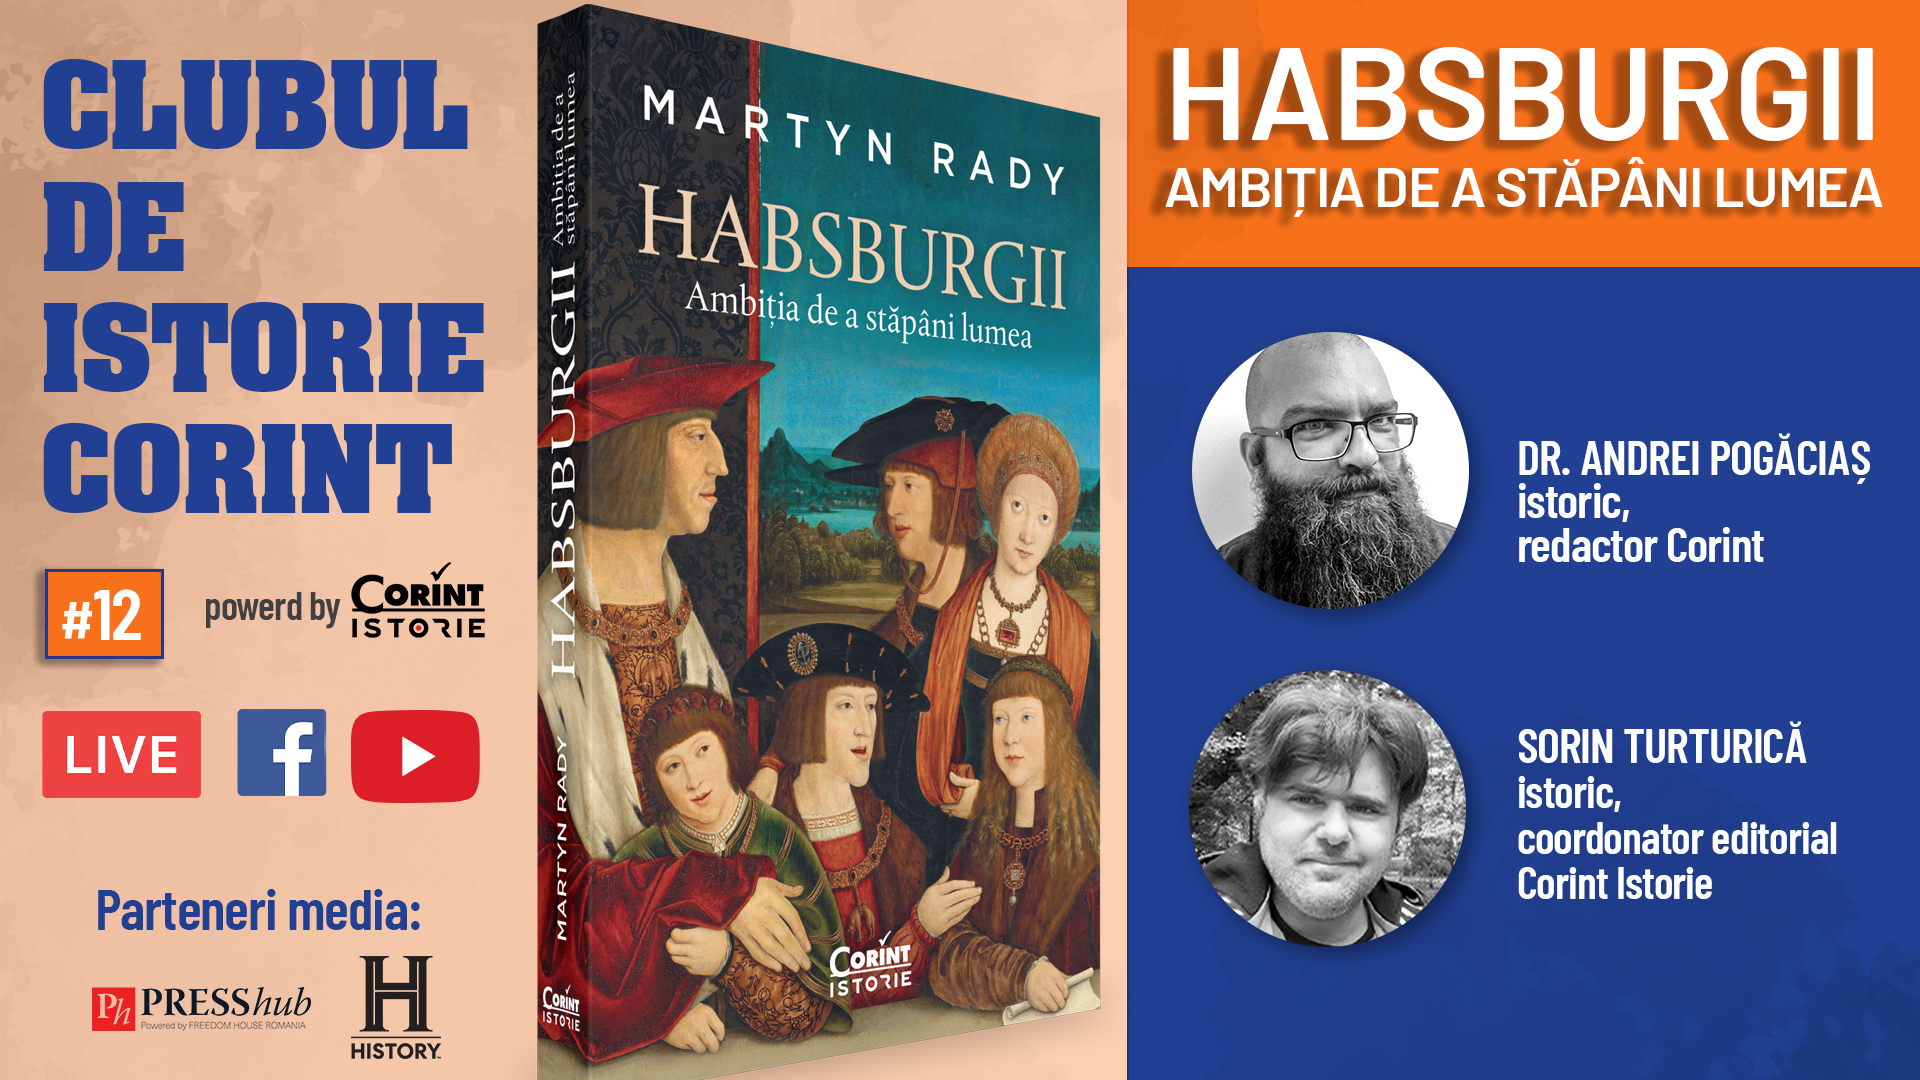 Clubul de istorie Corint #12: Habsburgii. Ambiția de a stăpâni lumea